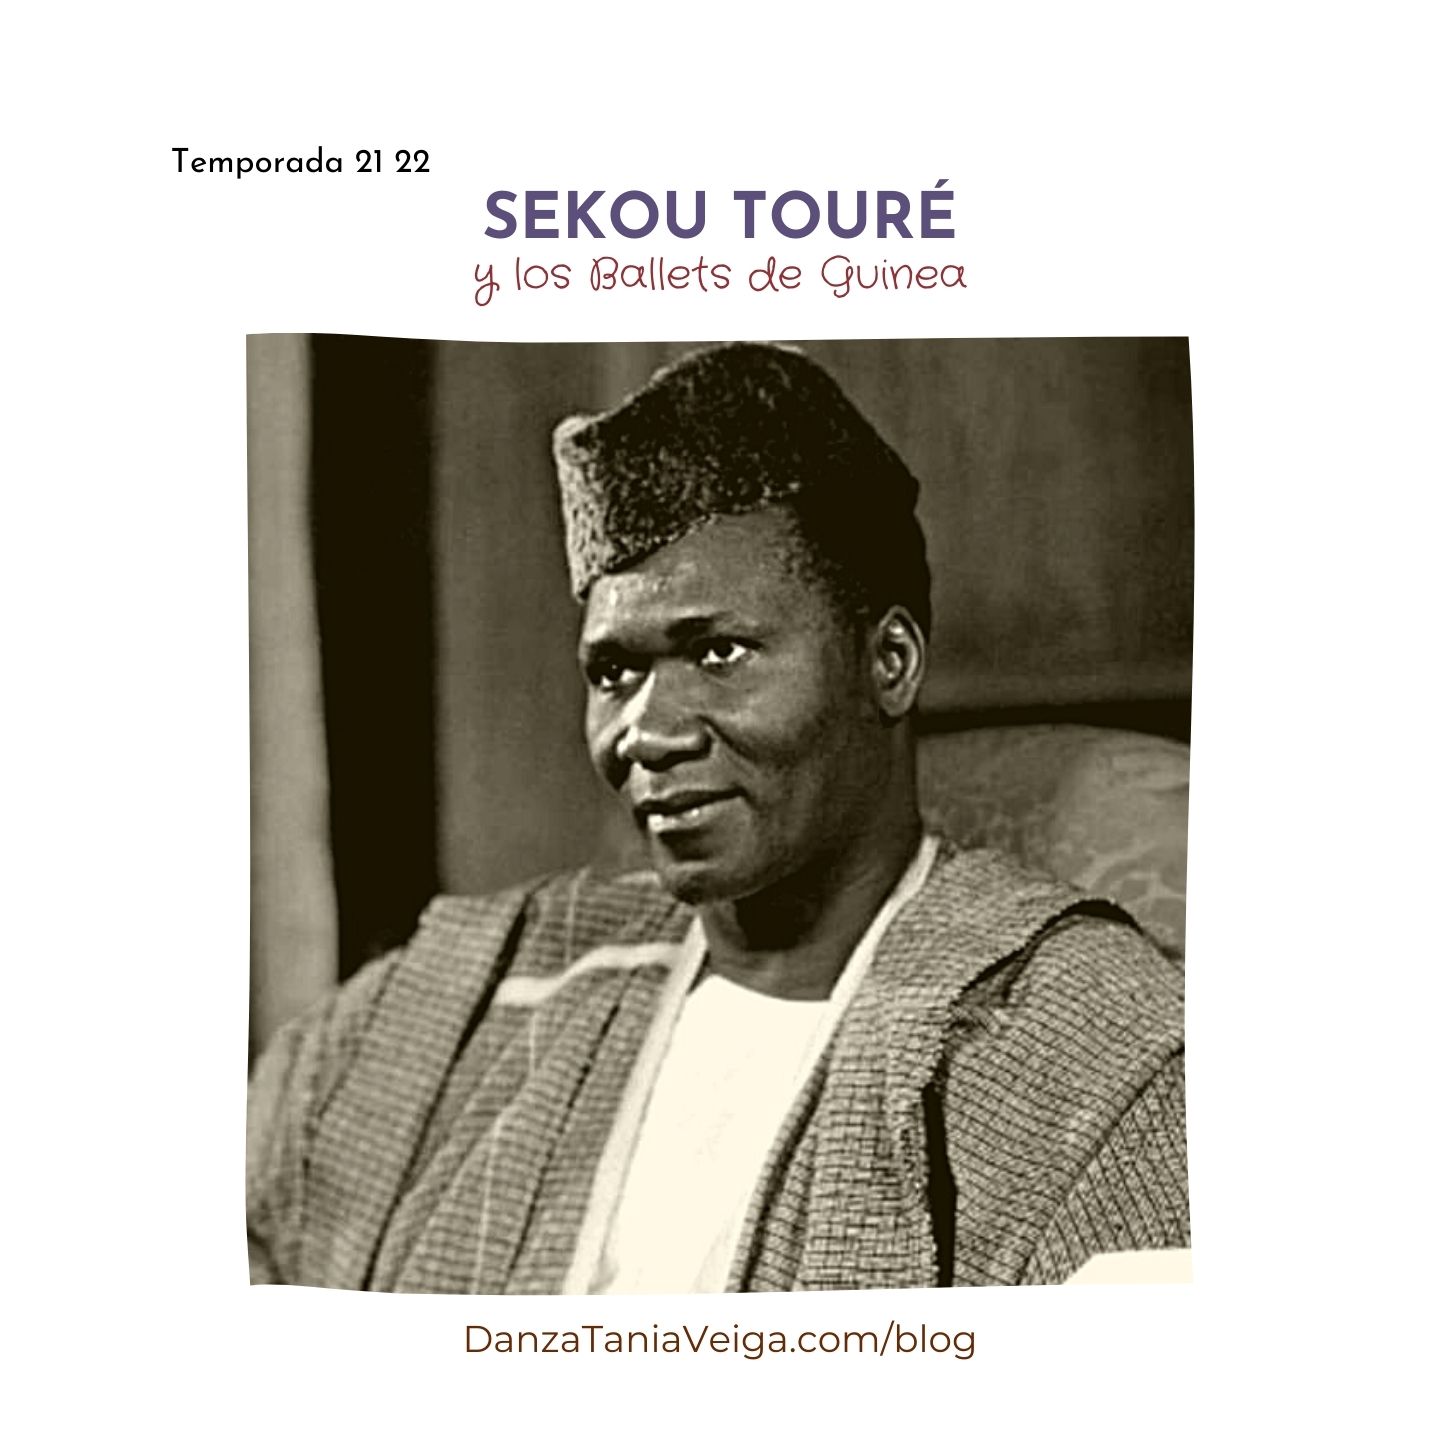 Sekou Toure y los ballets de Guinea